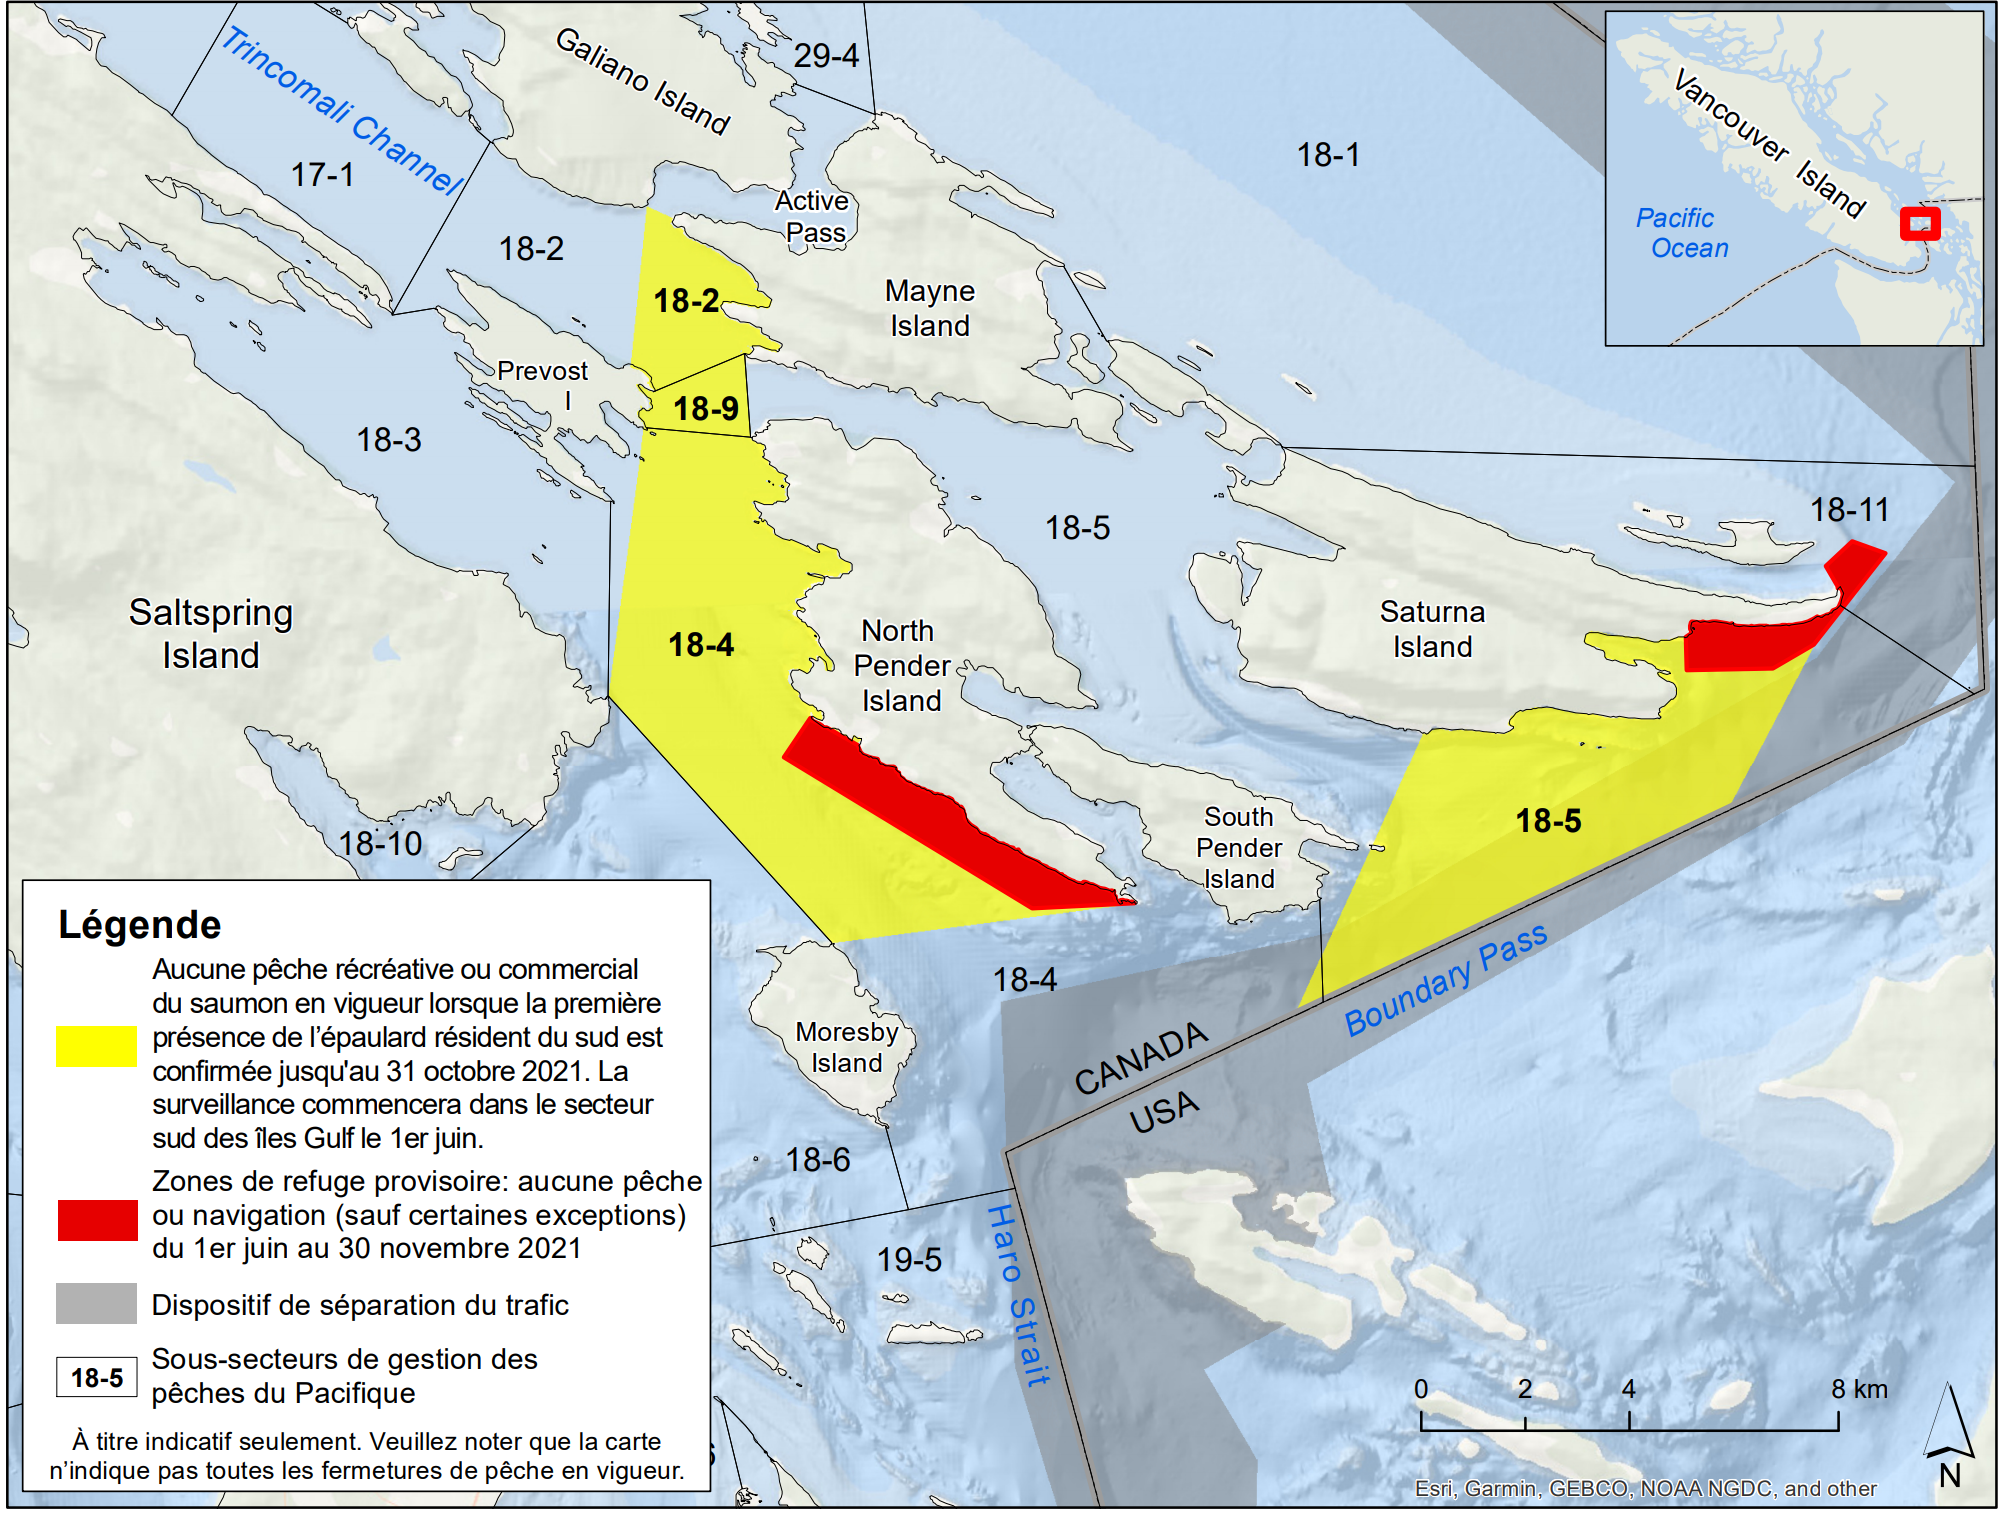 Carte illustrant les zones d’interdiction de pêche récréative ou commercial du saumon lors d’une détection d’un épaulard résident du sud (zones jaunes), les zones de refuge provisoire (zones rouges), le dispositif de séparation du trafic (en gris) et les sous-secteurs de gestion des pêches du Pacifique (numérotés).